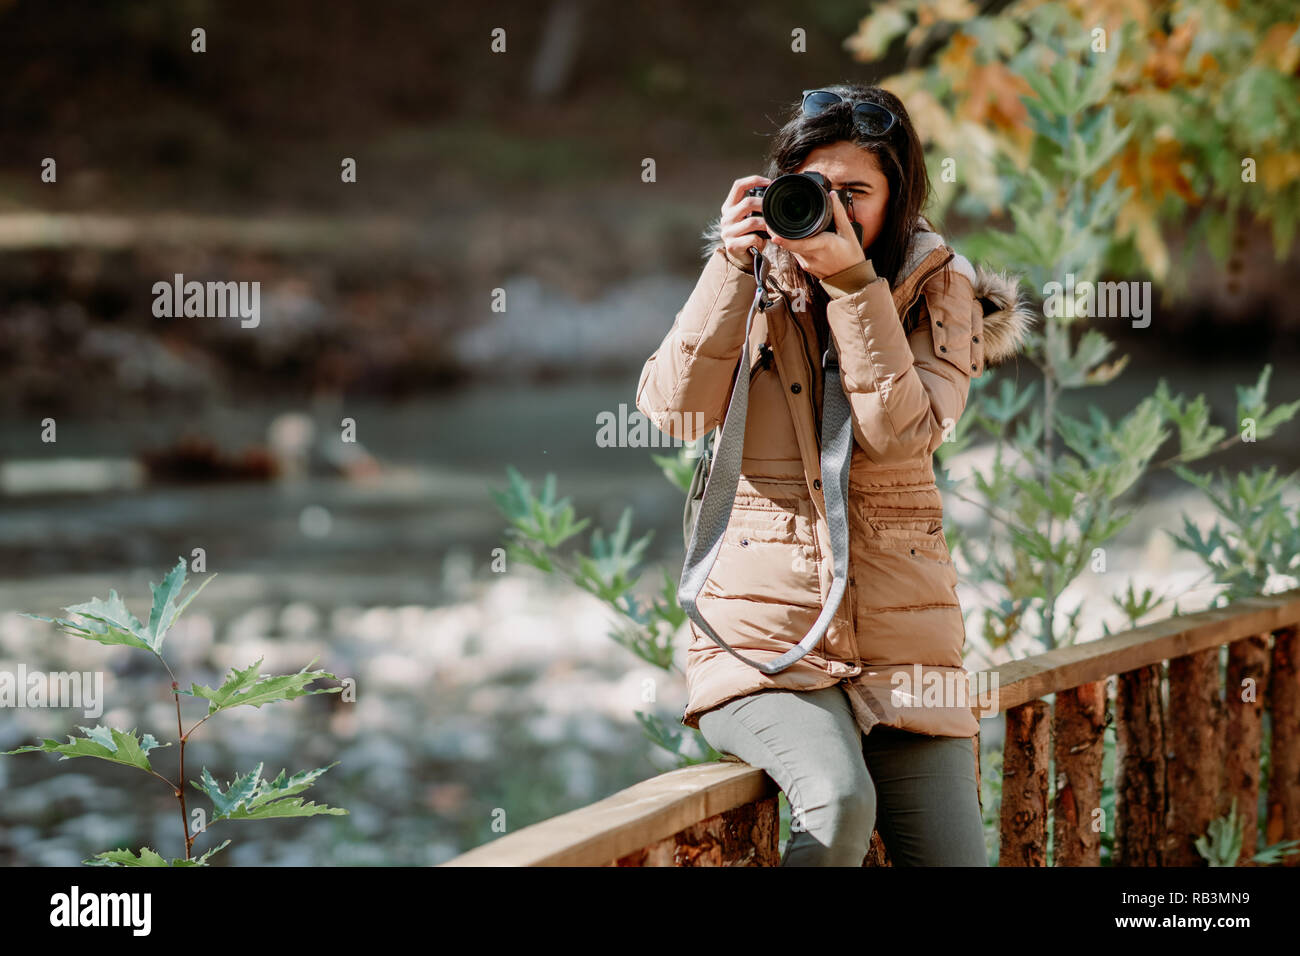 Fotografo donna immagini e fotografie stock ad alta risoluzione - Alamy